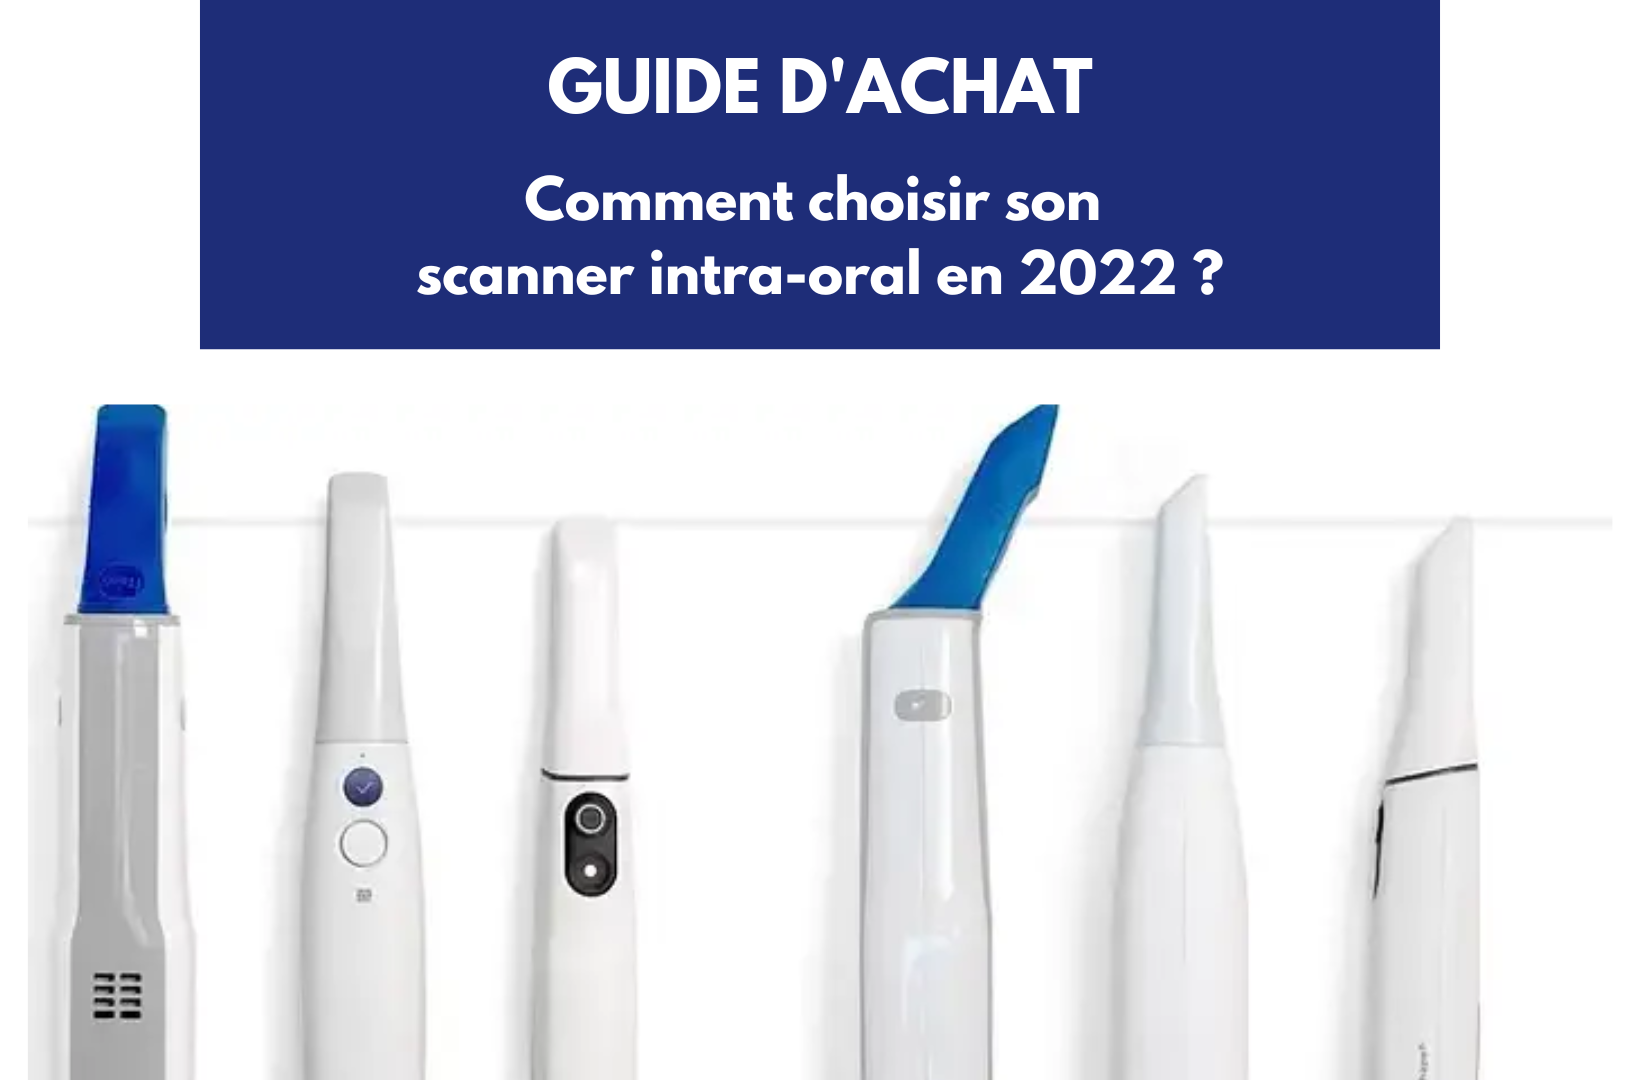 Comment choisir son scanner intra-oral en 2022 ? 